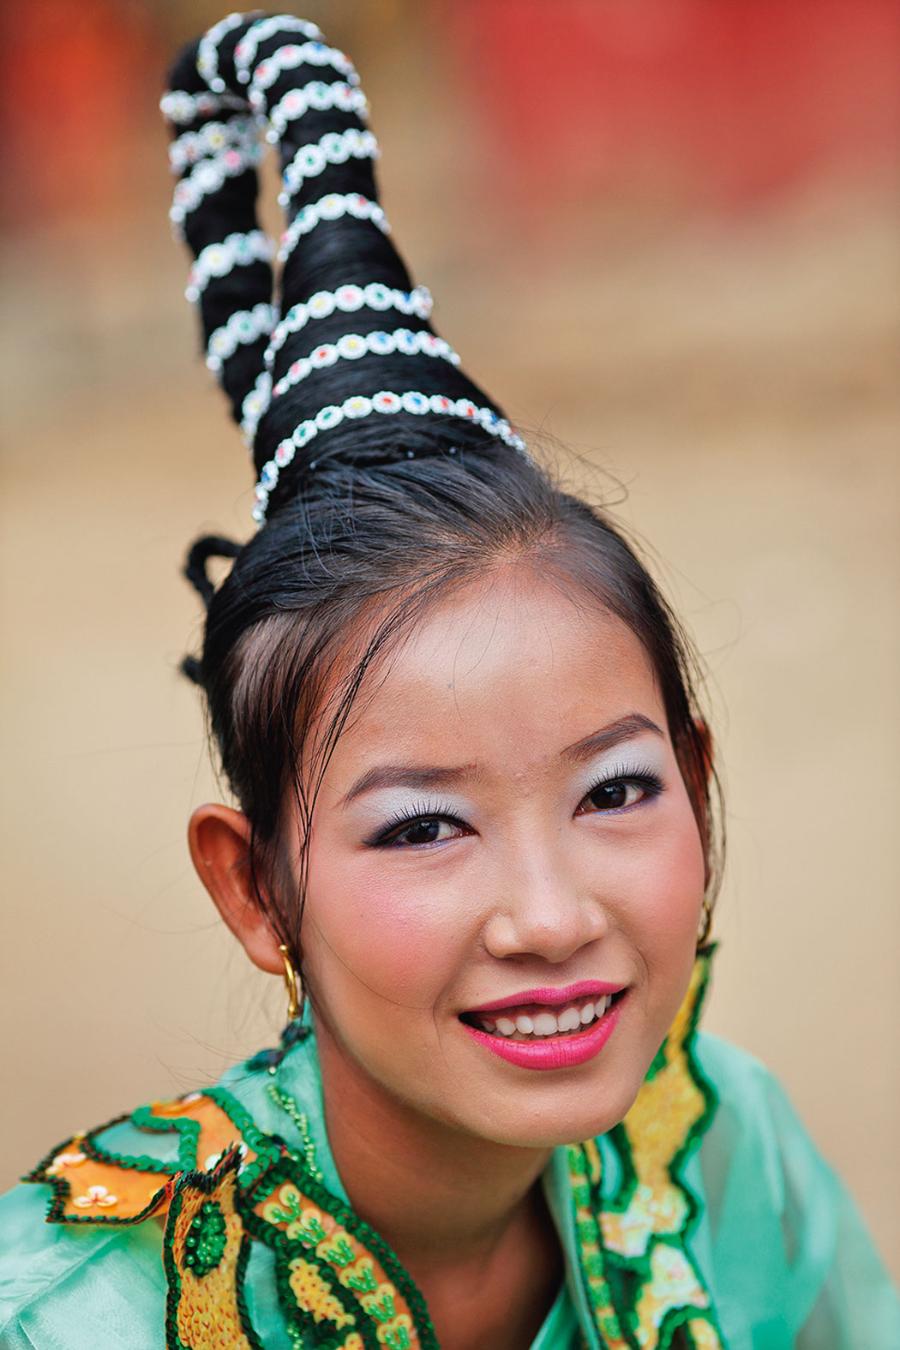 Z okazji wejścia birmańskiego chłopca w dorosłość przygotowuje się wielkie przyjęcie. Głowy kobiet zdobią kunsztowne fryzury.